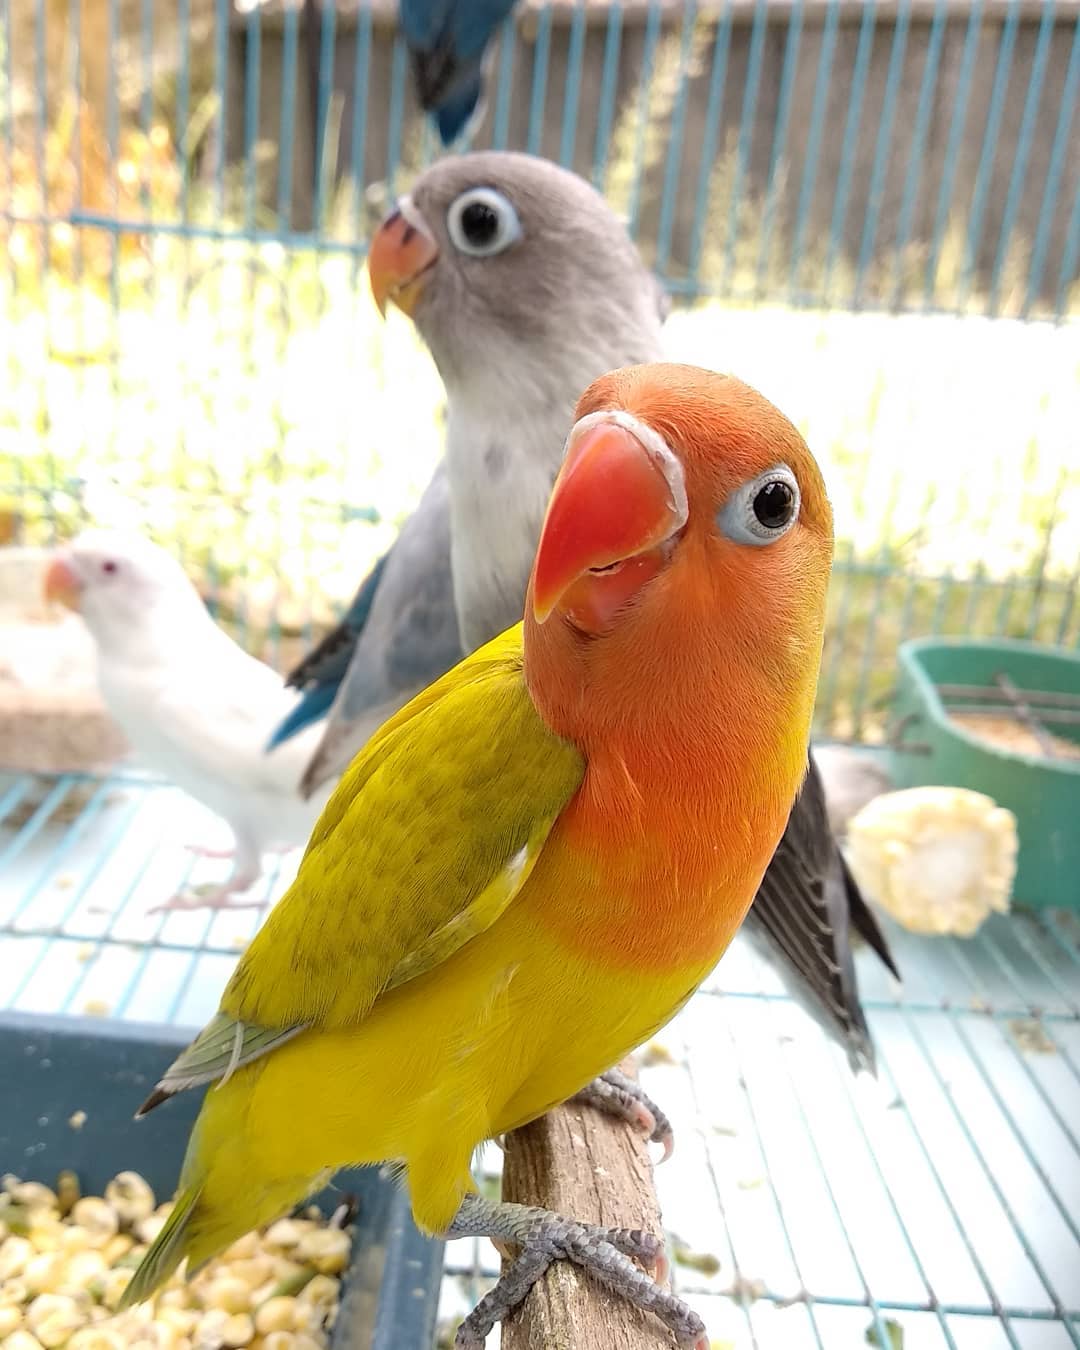 Pusat Jual Aneka  Burung  Kicau Burung  Lovebird Dengan Harga Murah Di Kota Klaten Seputar Info 